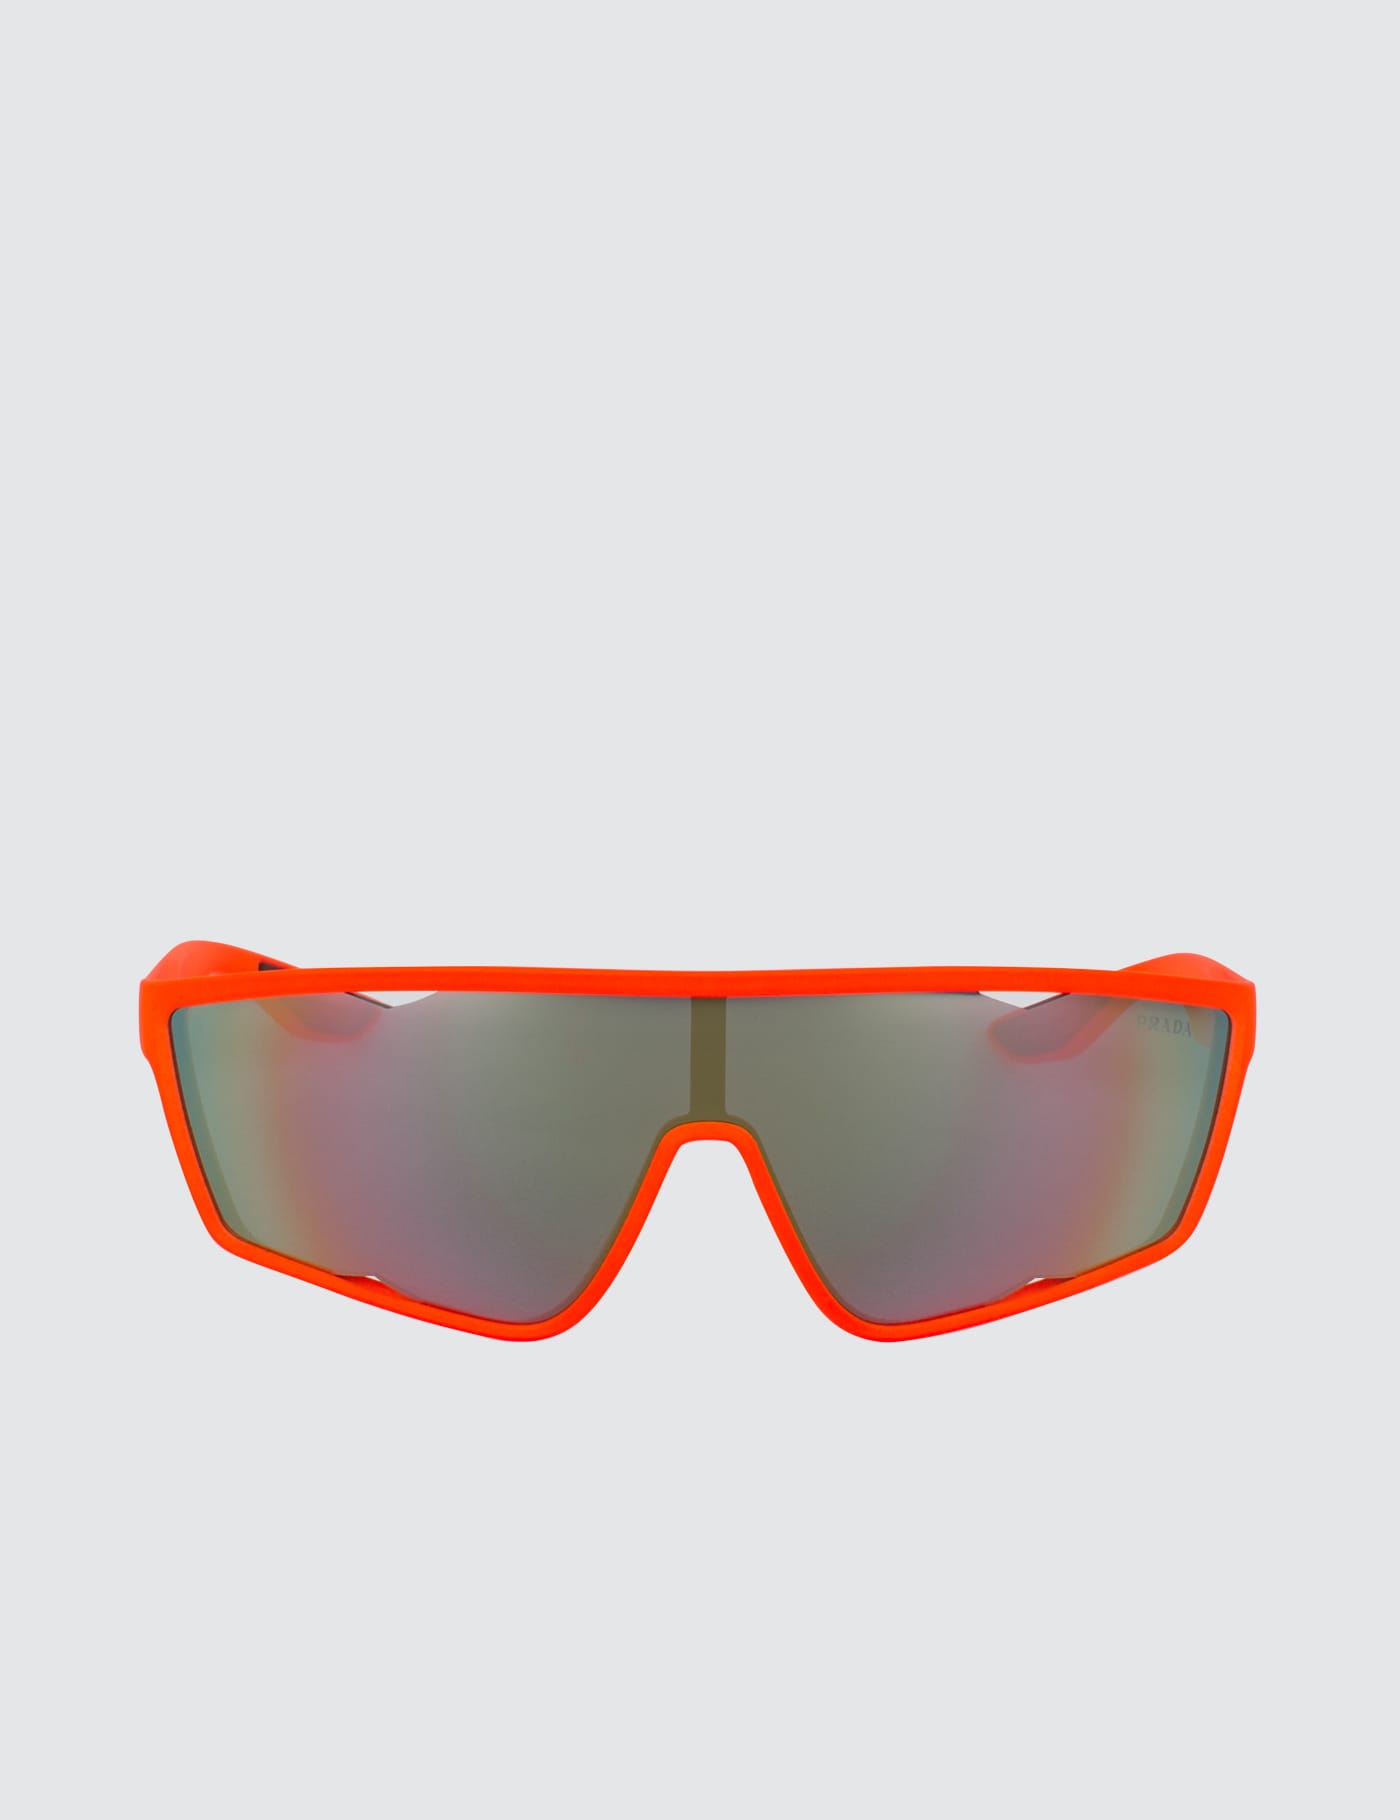 prada sunglasses orange